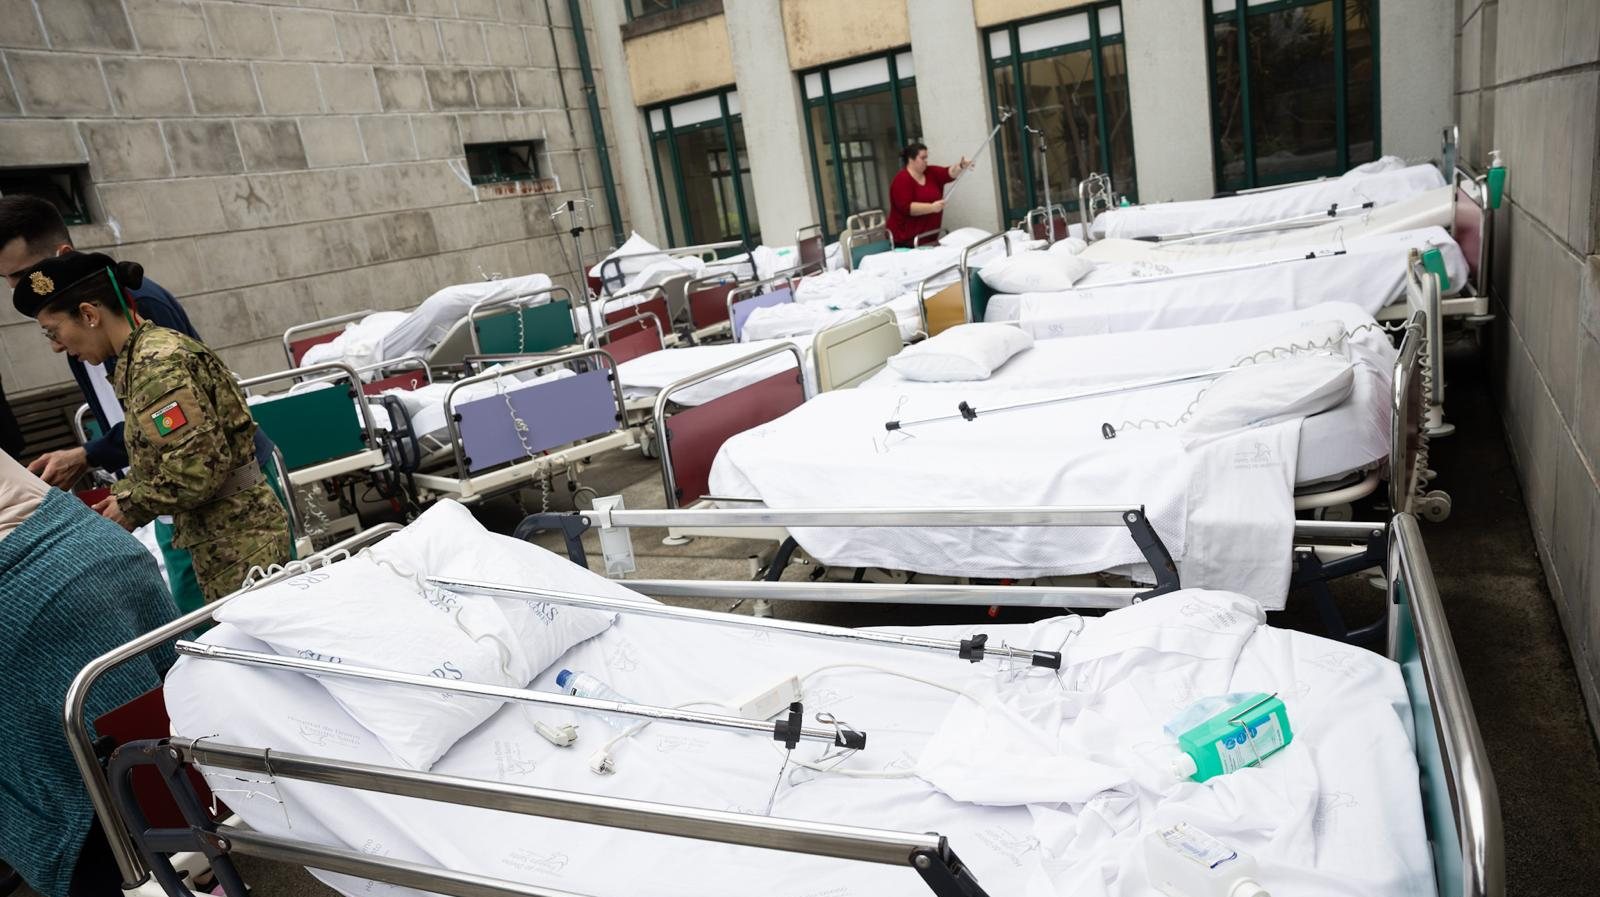 Na altura do incêndio estavam no Hospital de Ponta Delgada &quot;333 doentes no Hospital&quot; e foi necessário proceder &quot;à transferência de 240 doentes&quot;, segundo a titular da pasta da Saúde nos Açores.